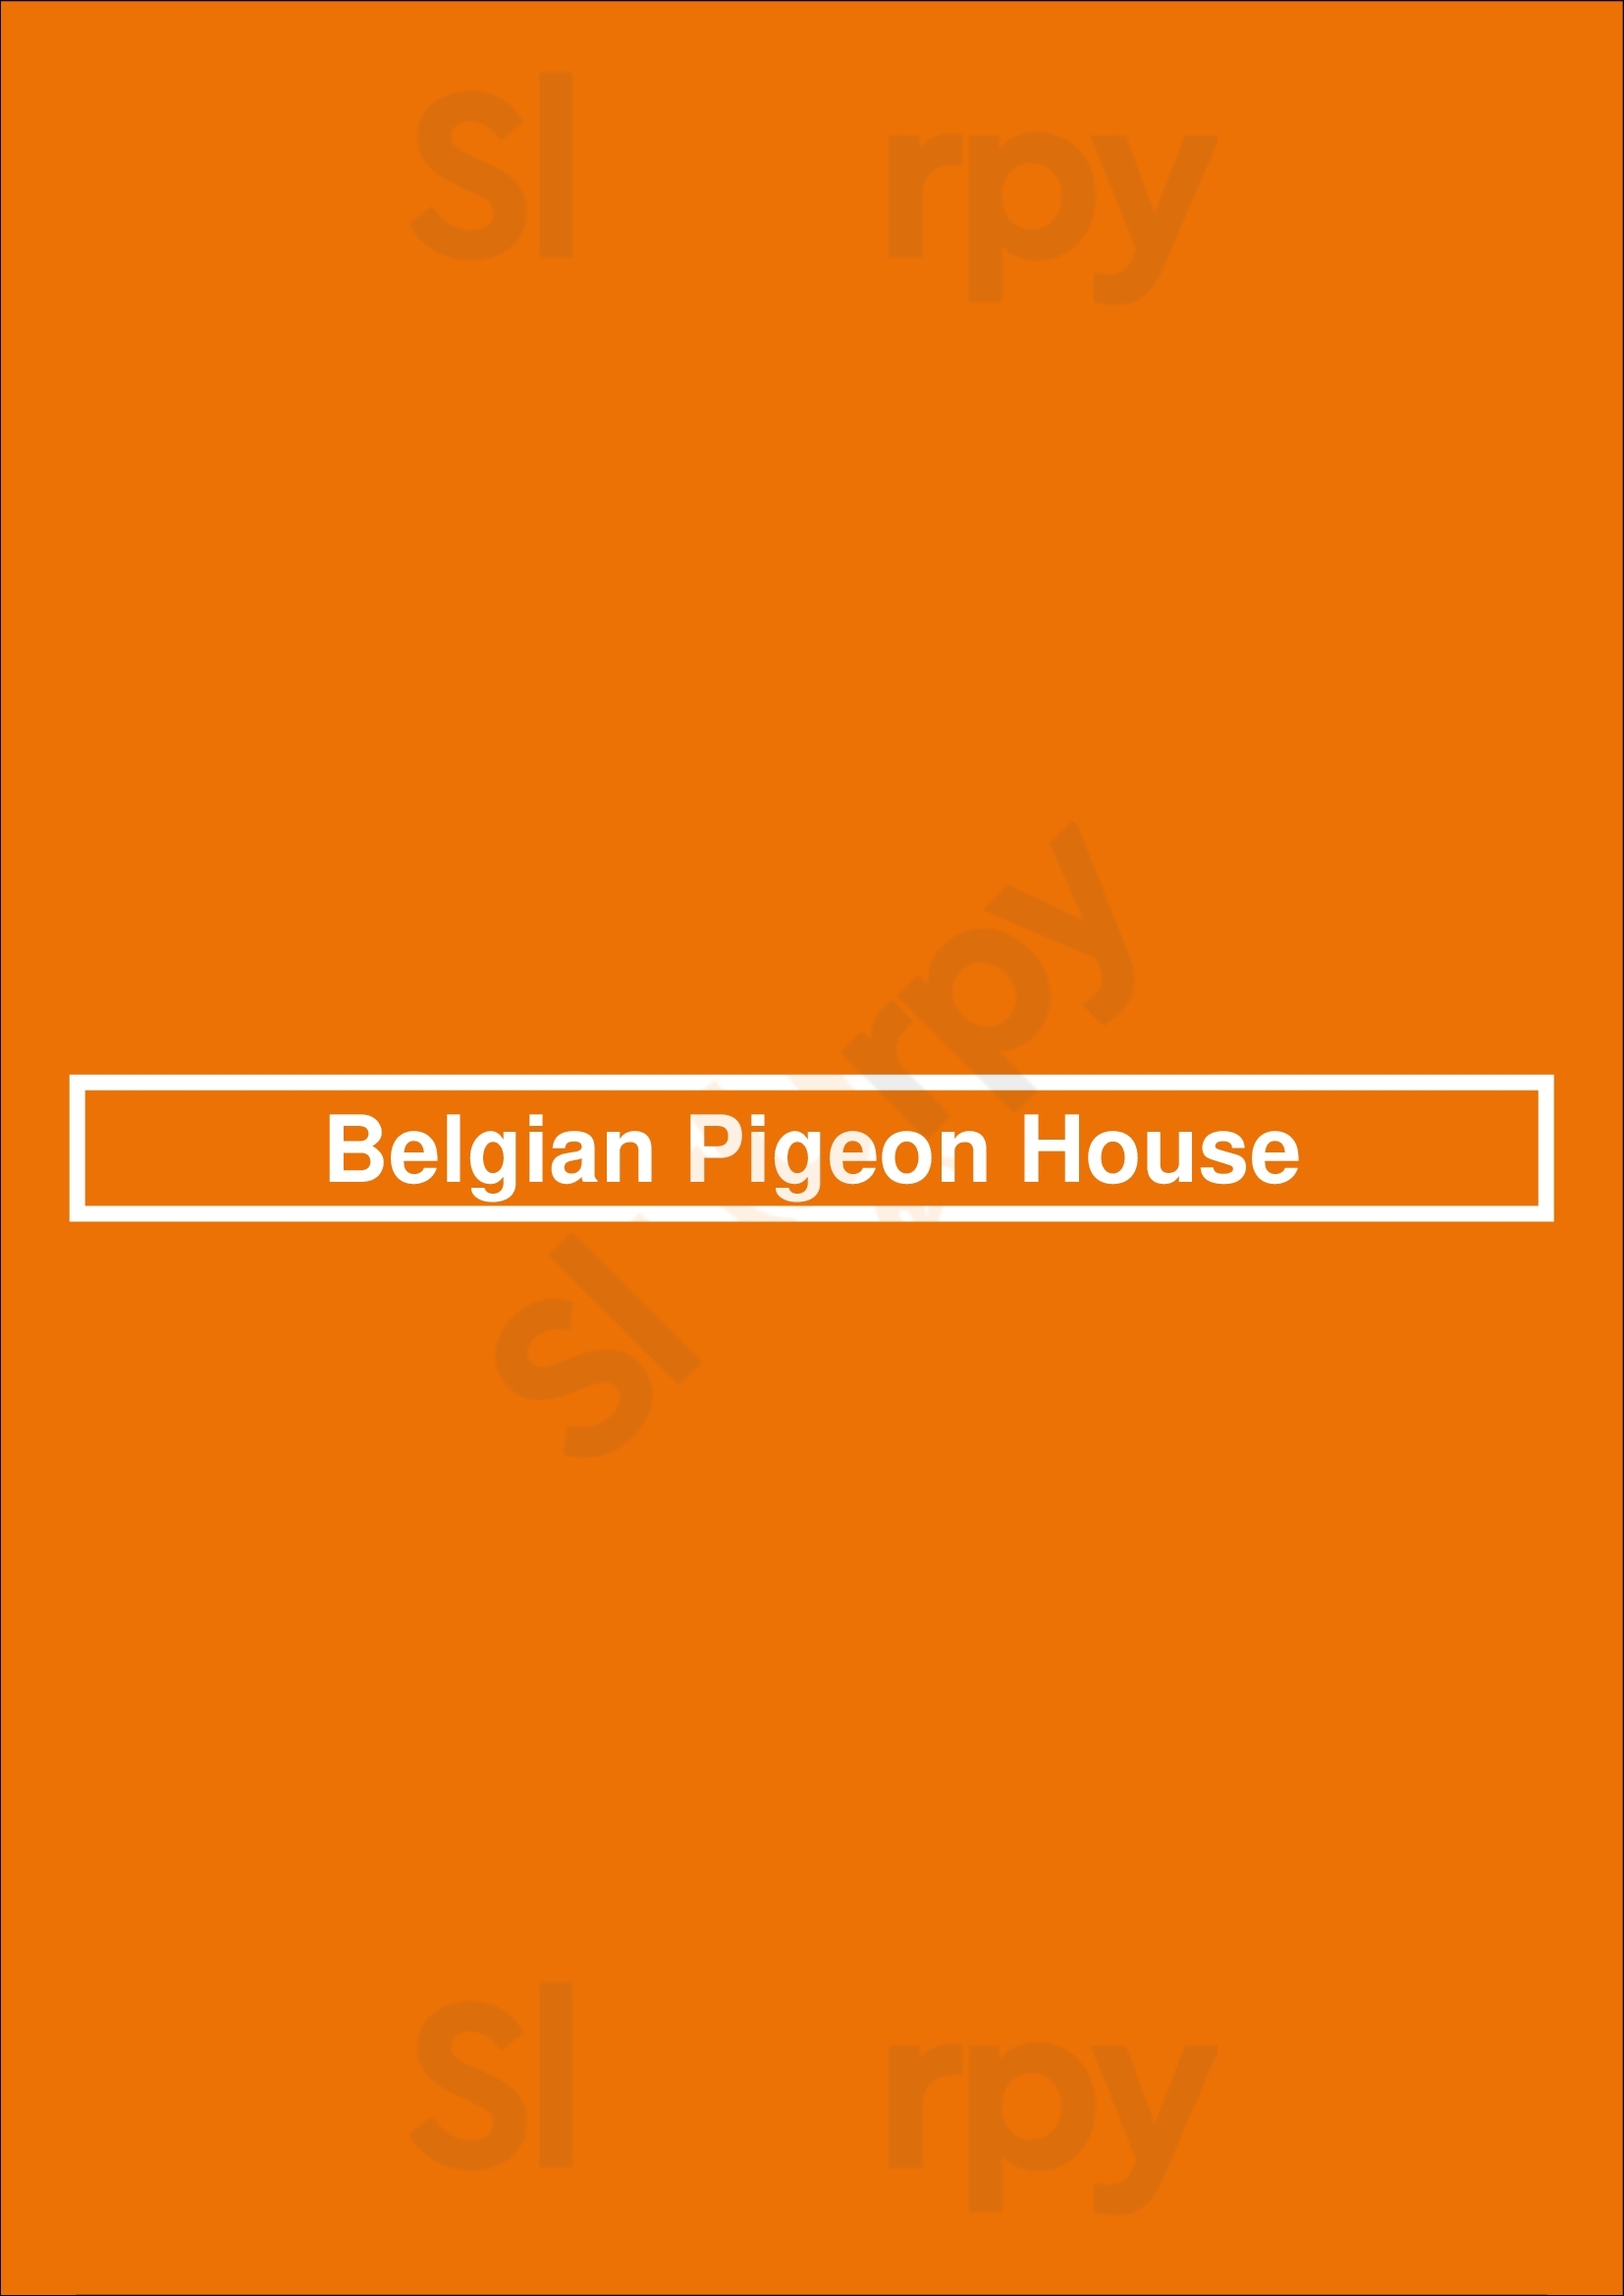 Belgian Pigeon House Bruges Menu - 1